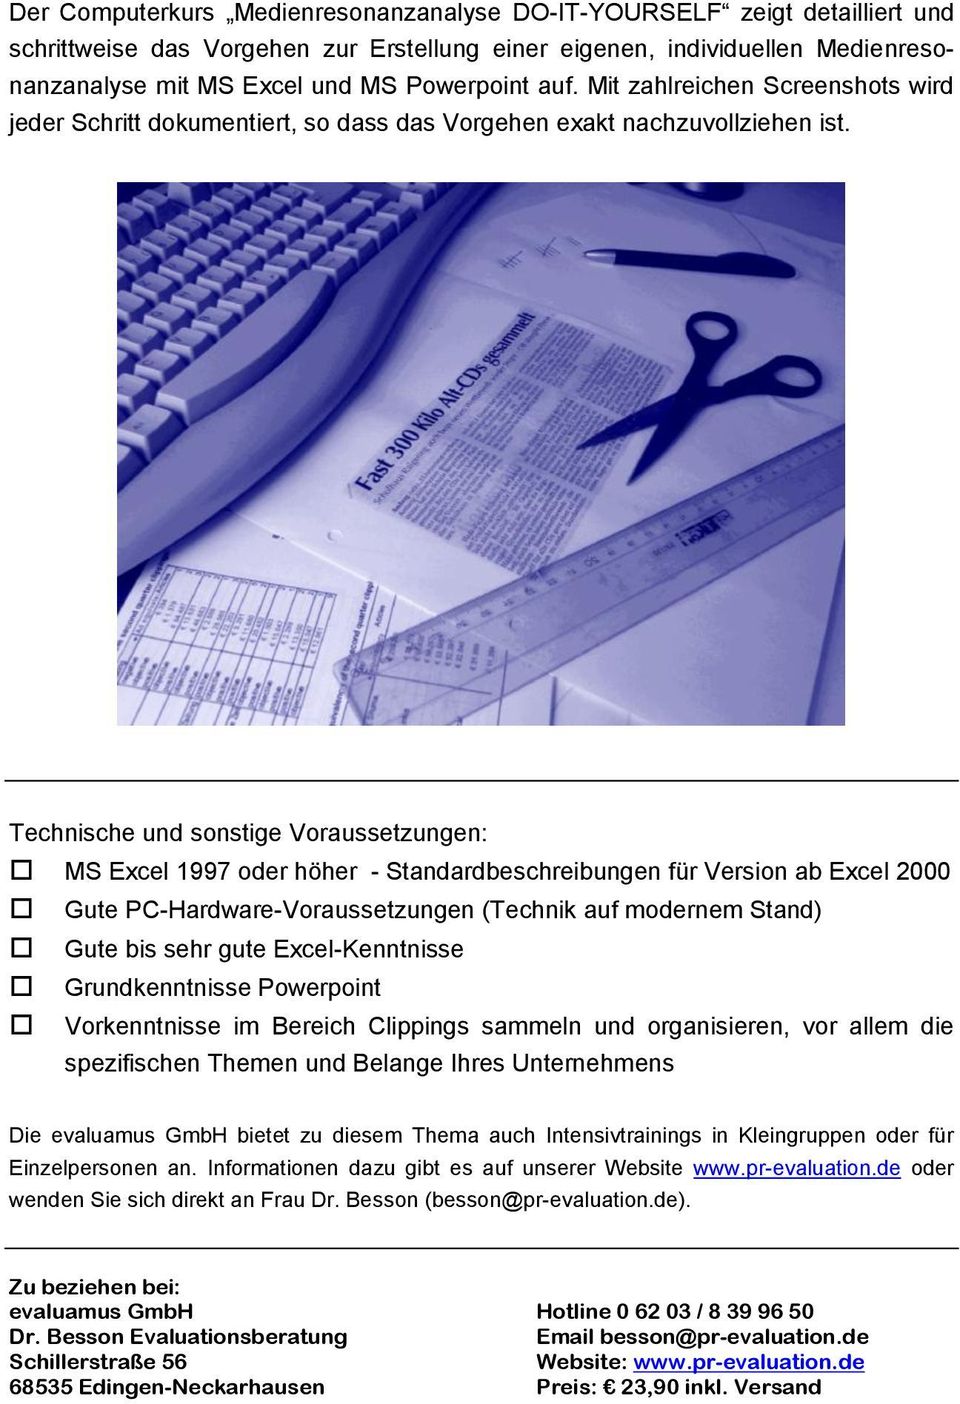 Technische und sonstige Voraussetzungen: MS Excel 1997 oder höher - Standardbeschreibungen für Version ab Excel 2000 Gute PC-Hardware-Voraussetzungen (Technik auf modernem Stand) Gute bis sehr gute